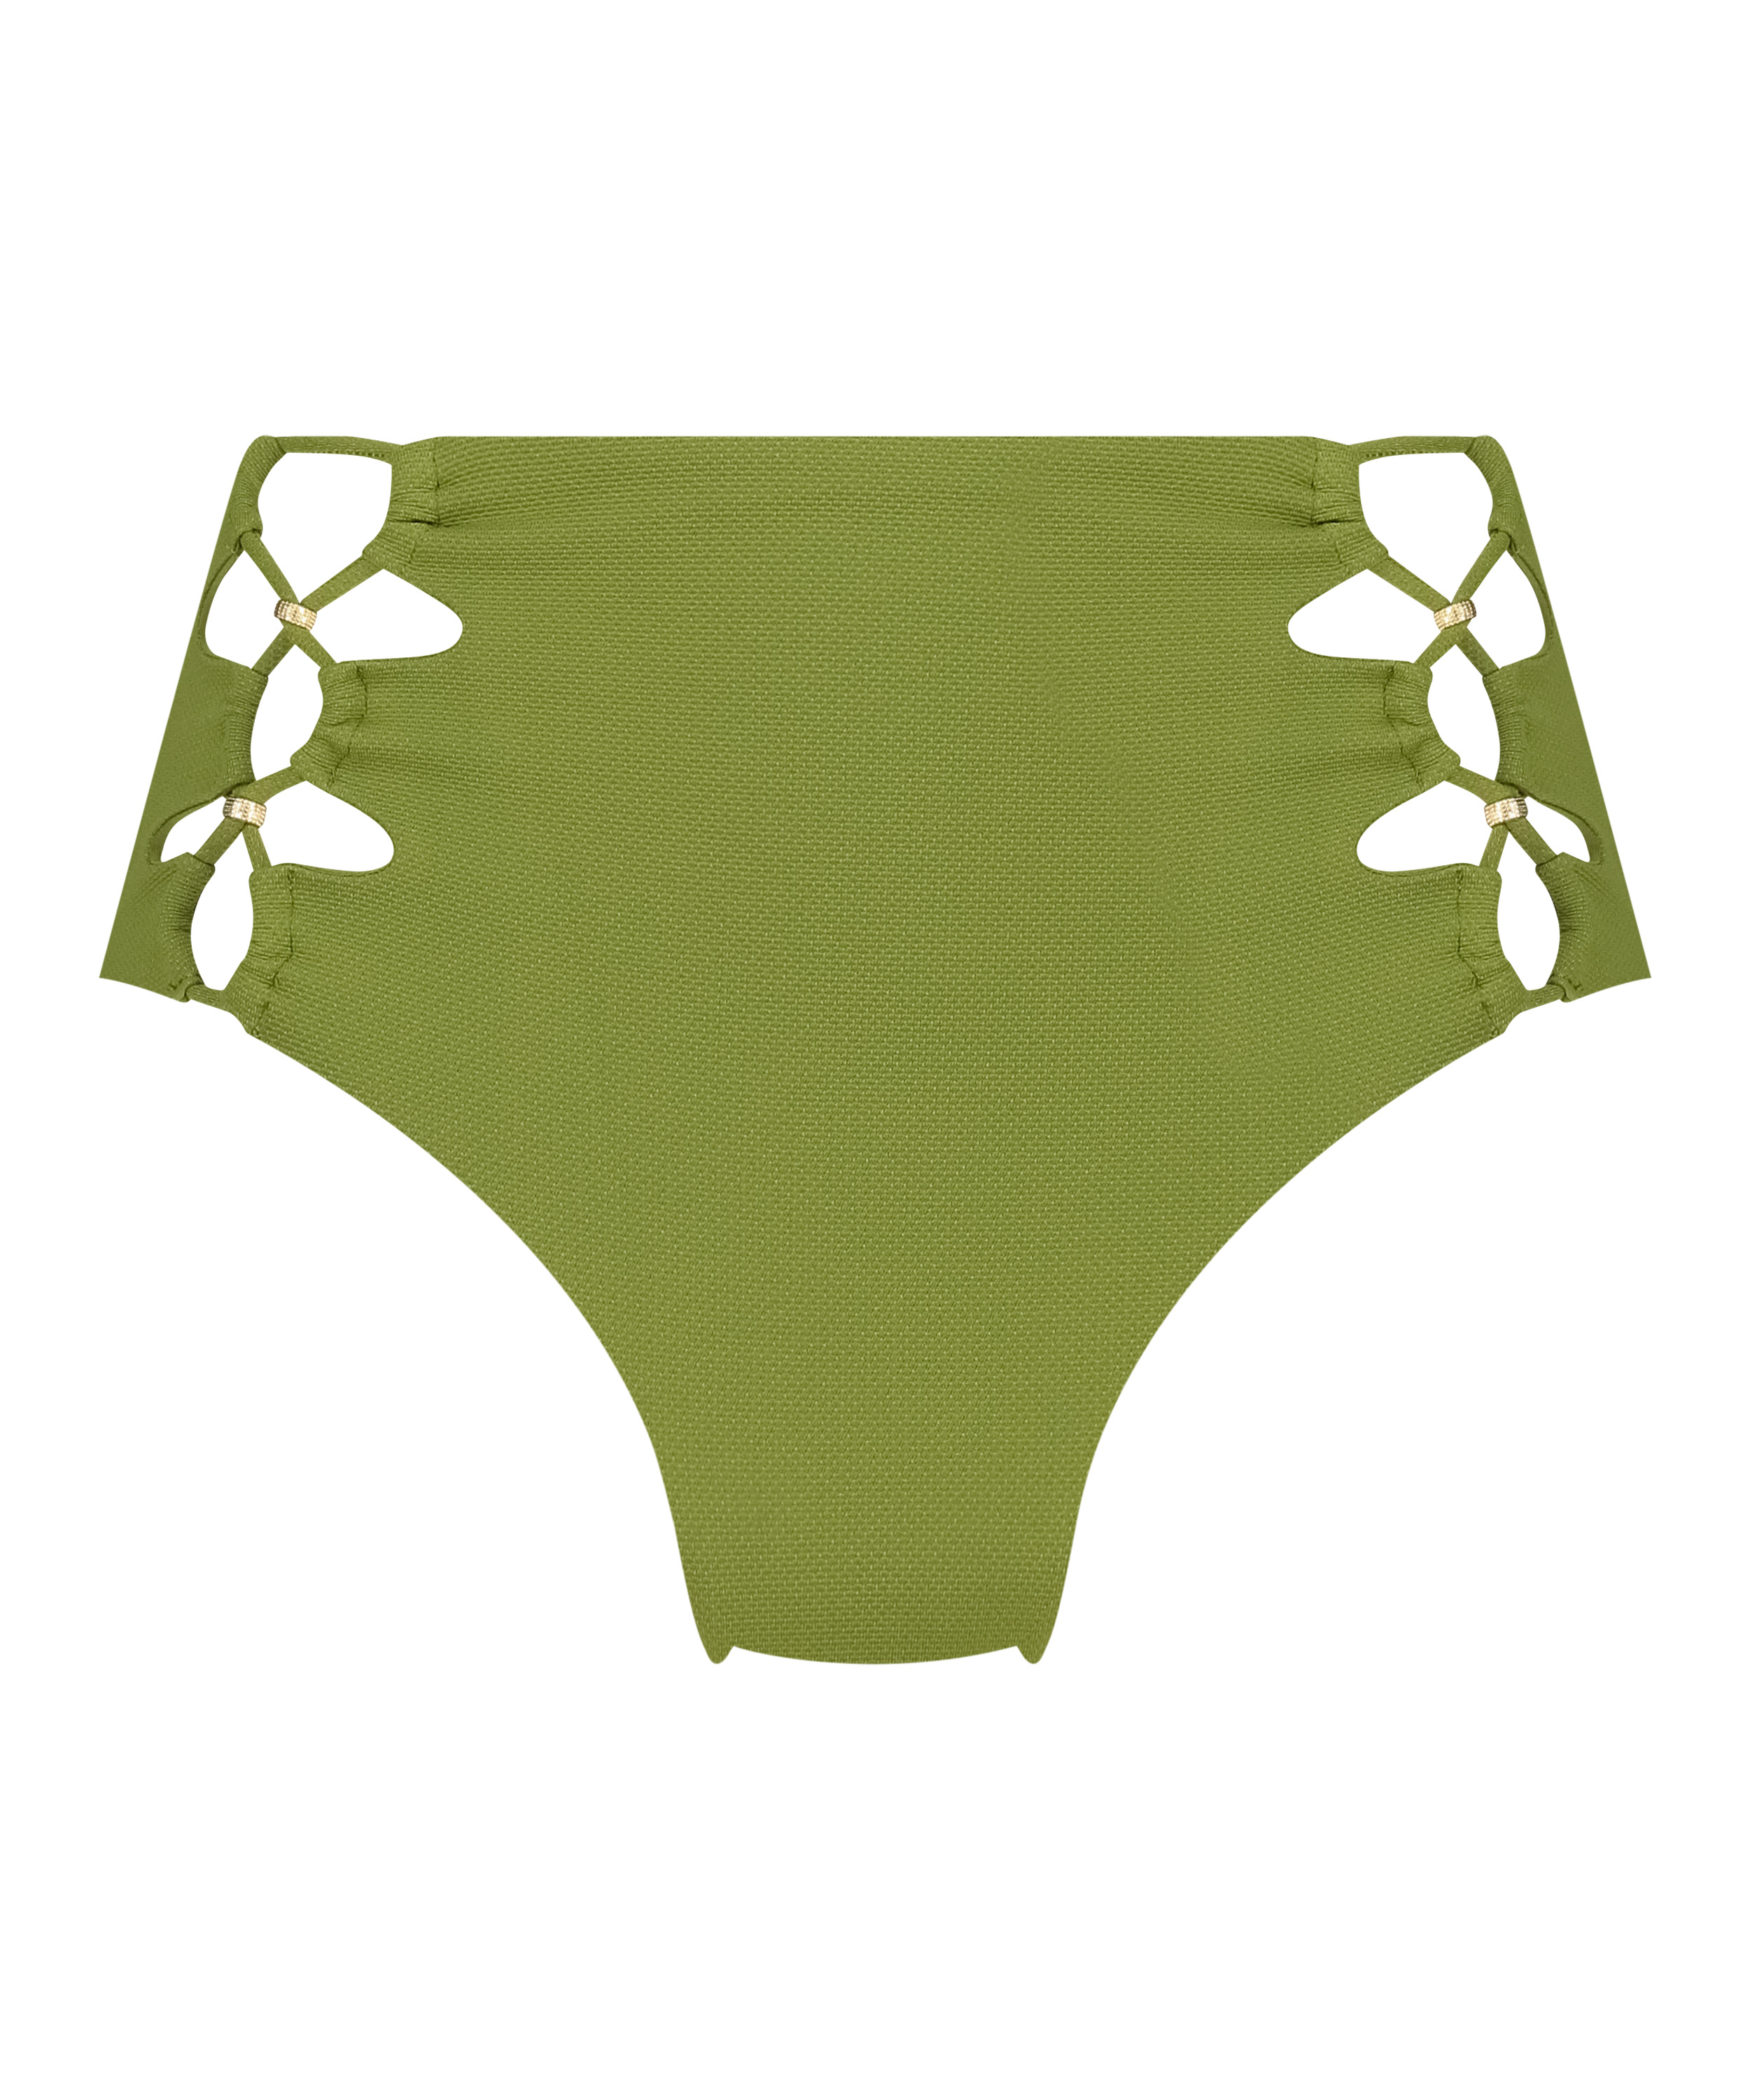 Majtki Bikini Rio Holbox, Zielony, main